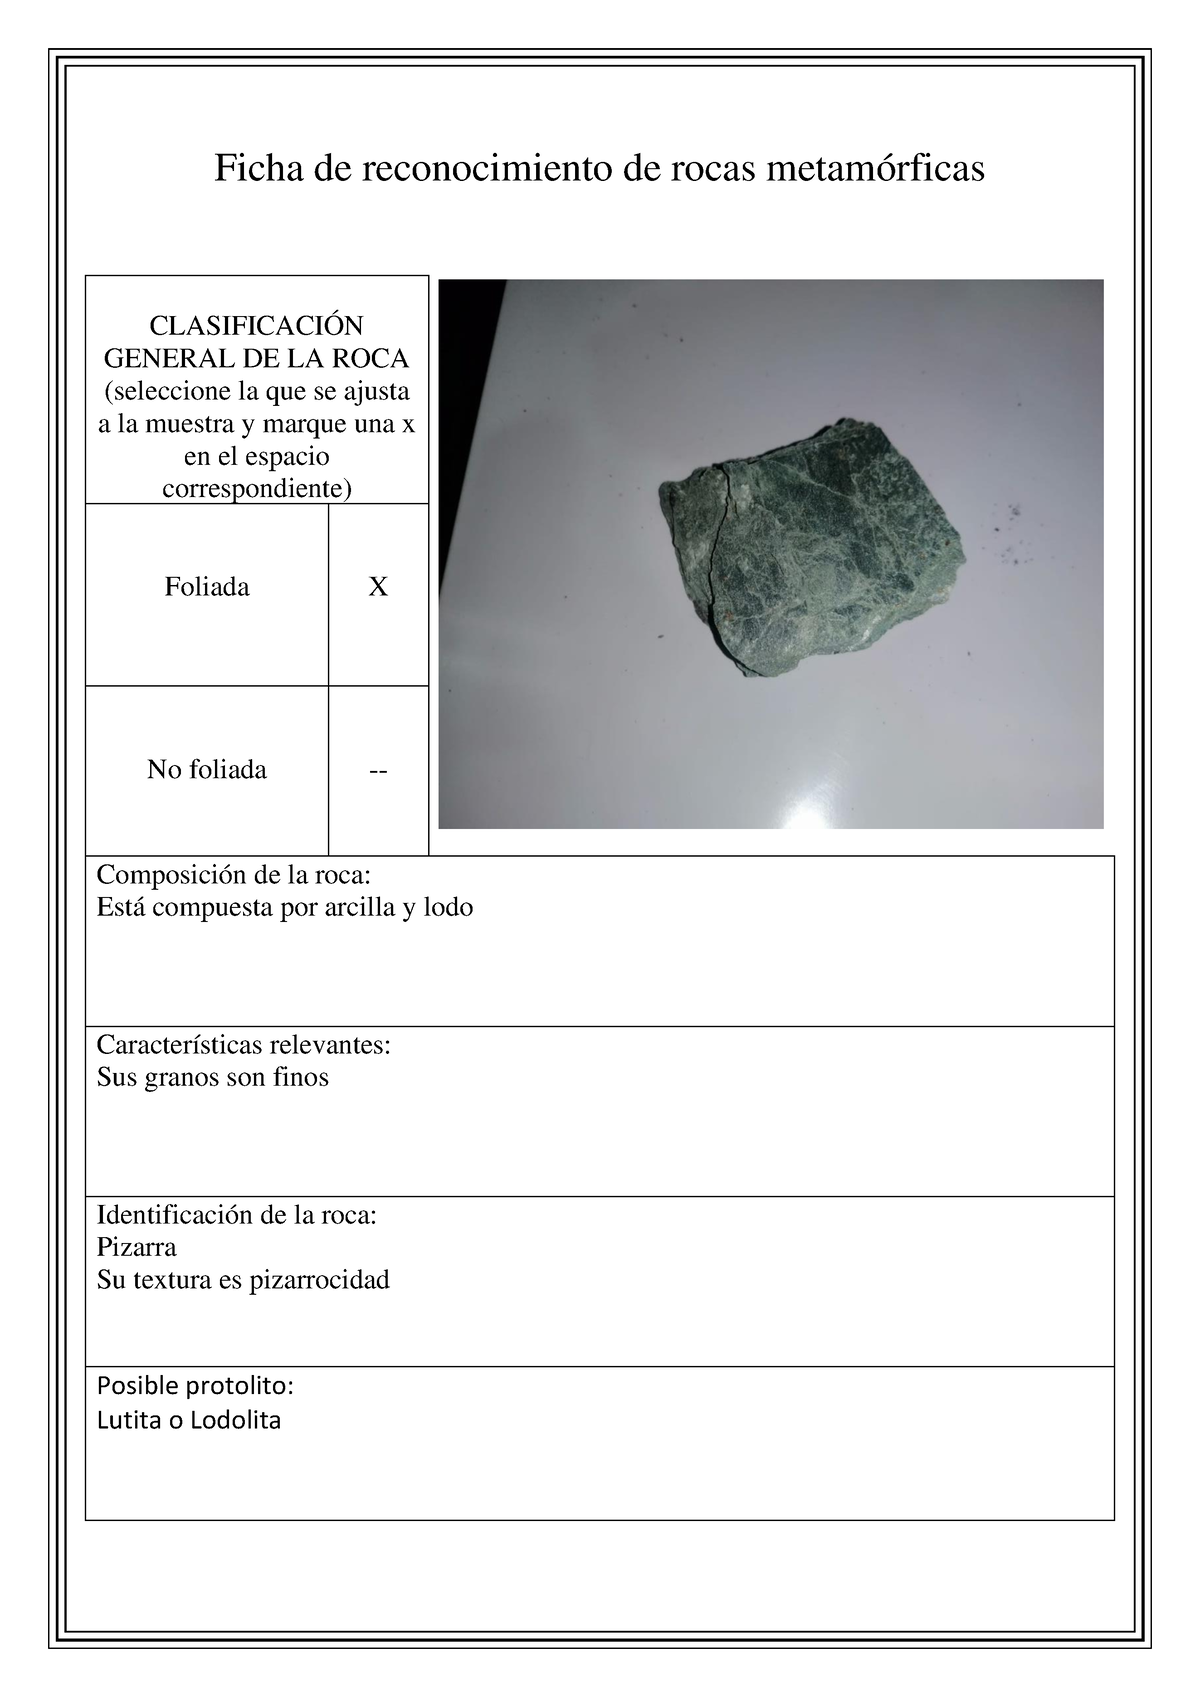 Curso sobre reconocimiento de rocas, minerales y piedras preciosas